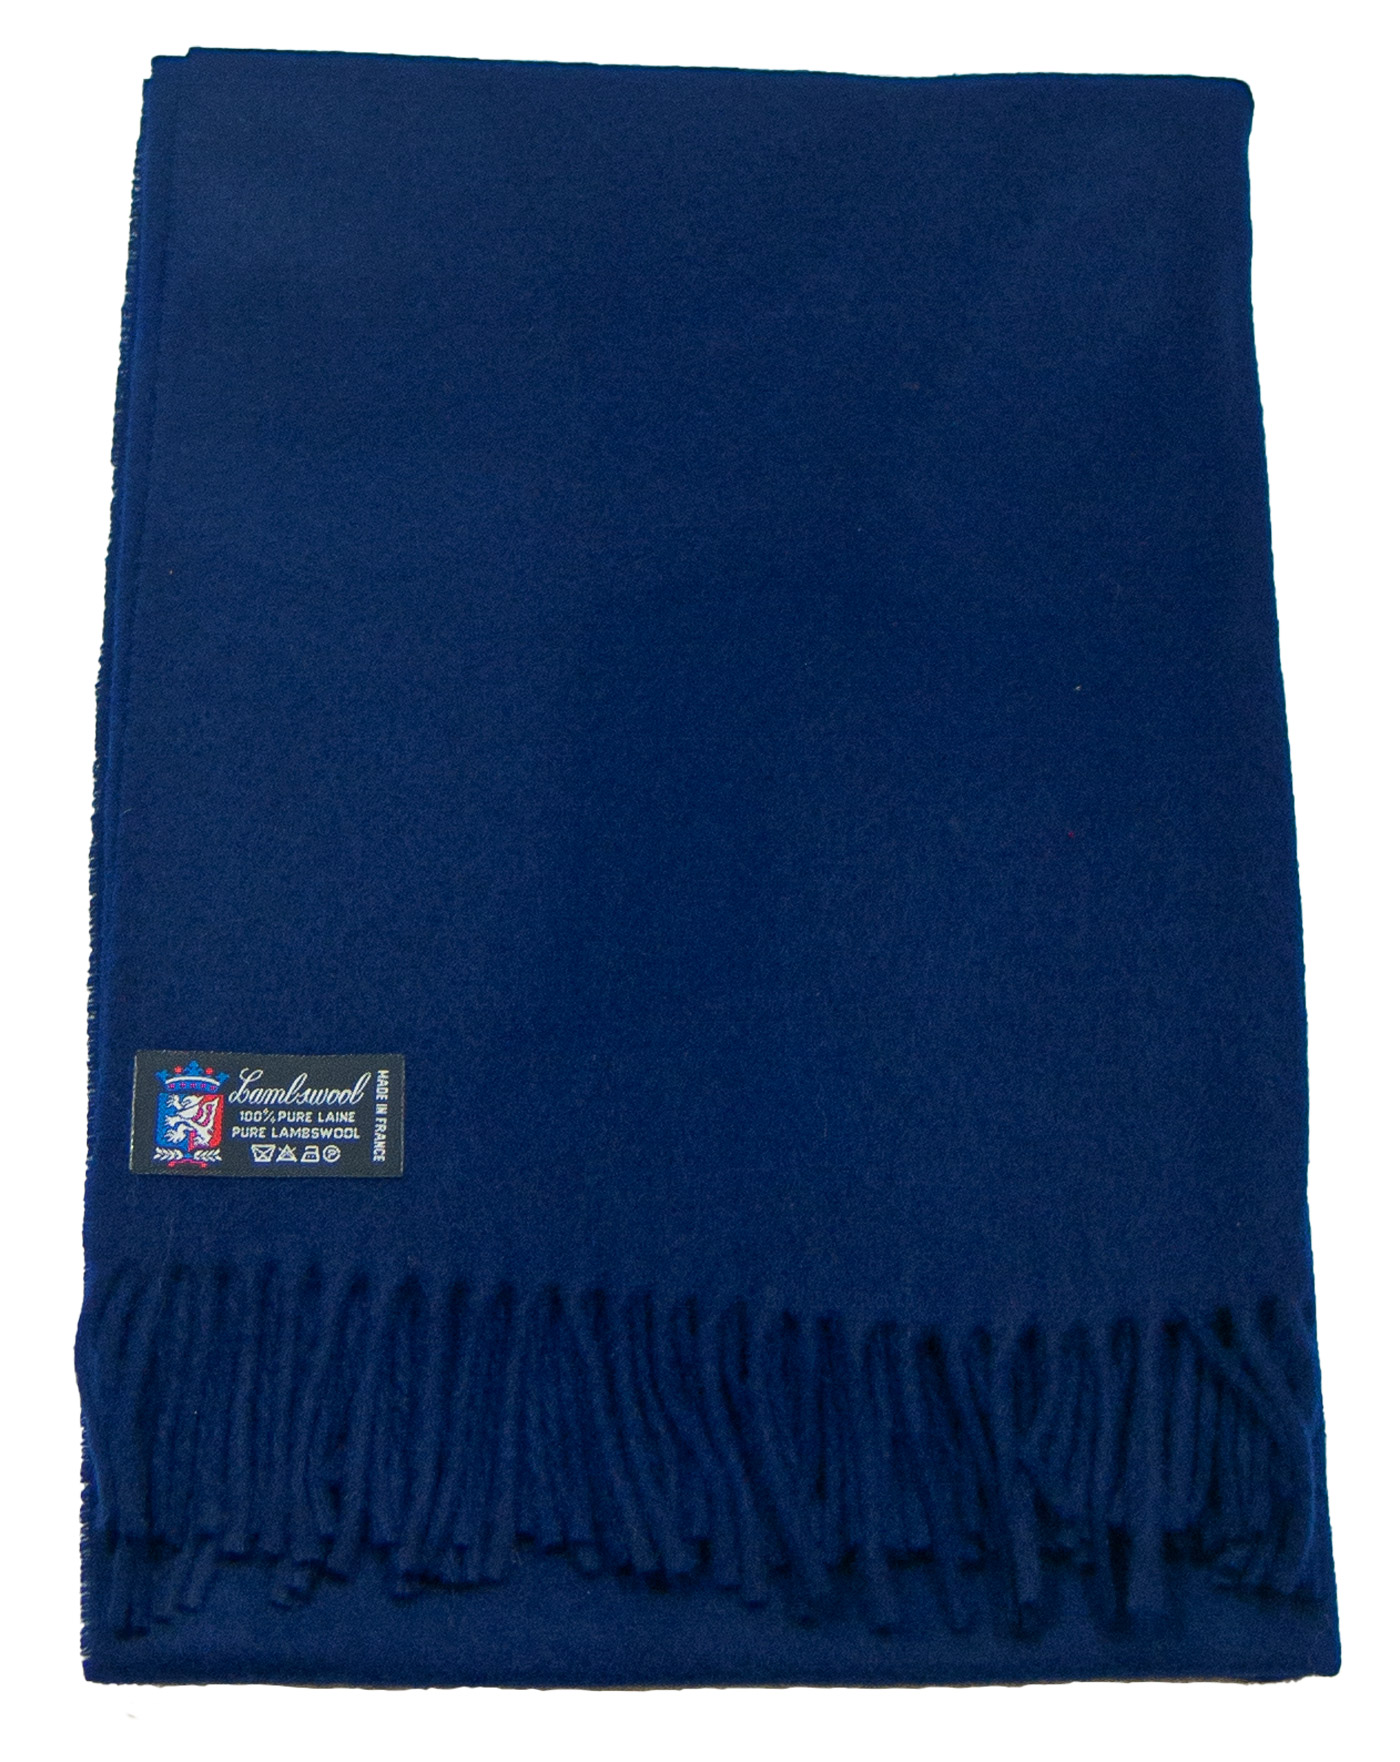 étole femme laine bleu navy fabriquée en France